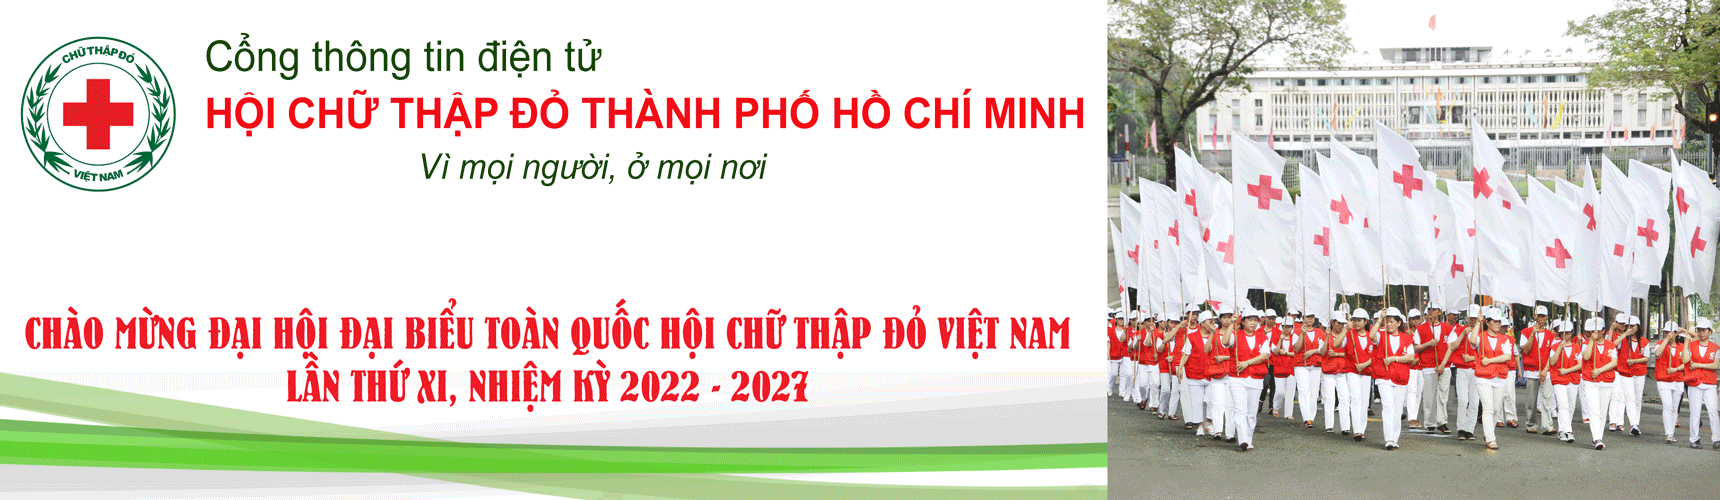 Hội Chữ thập đỏ Thành phố Hồ Chí Minh | Hội Chữ thập đỏ quận Gò Vấp phối hợp tổ chức “Ngày hội chăm sóc sức khỏe cho thiếu nhi hè” năm 2022